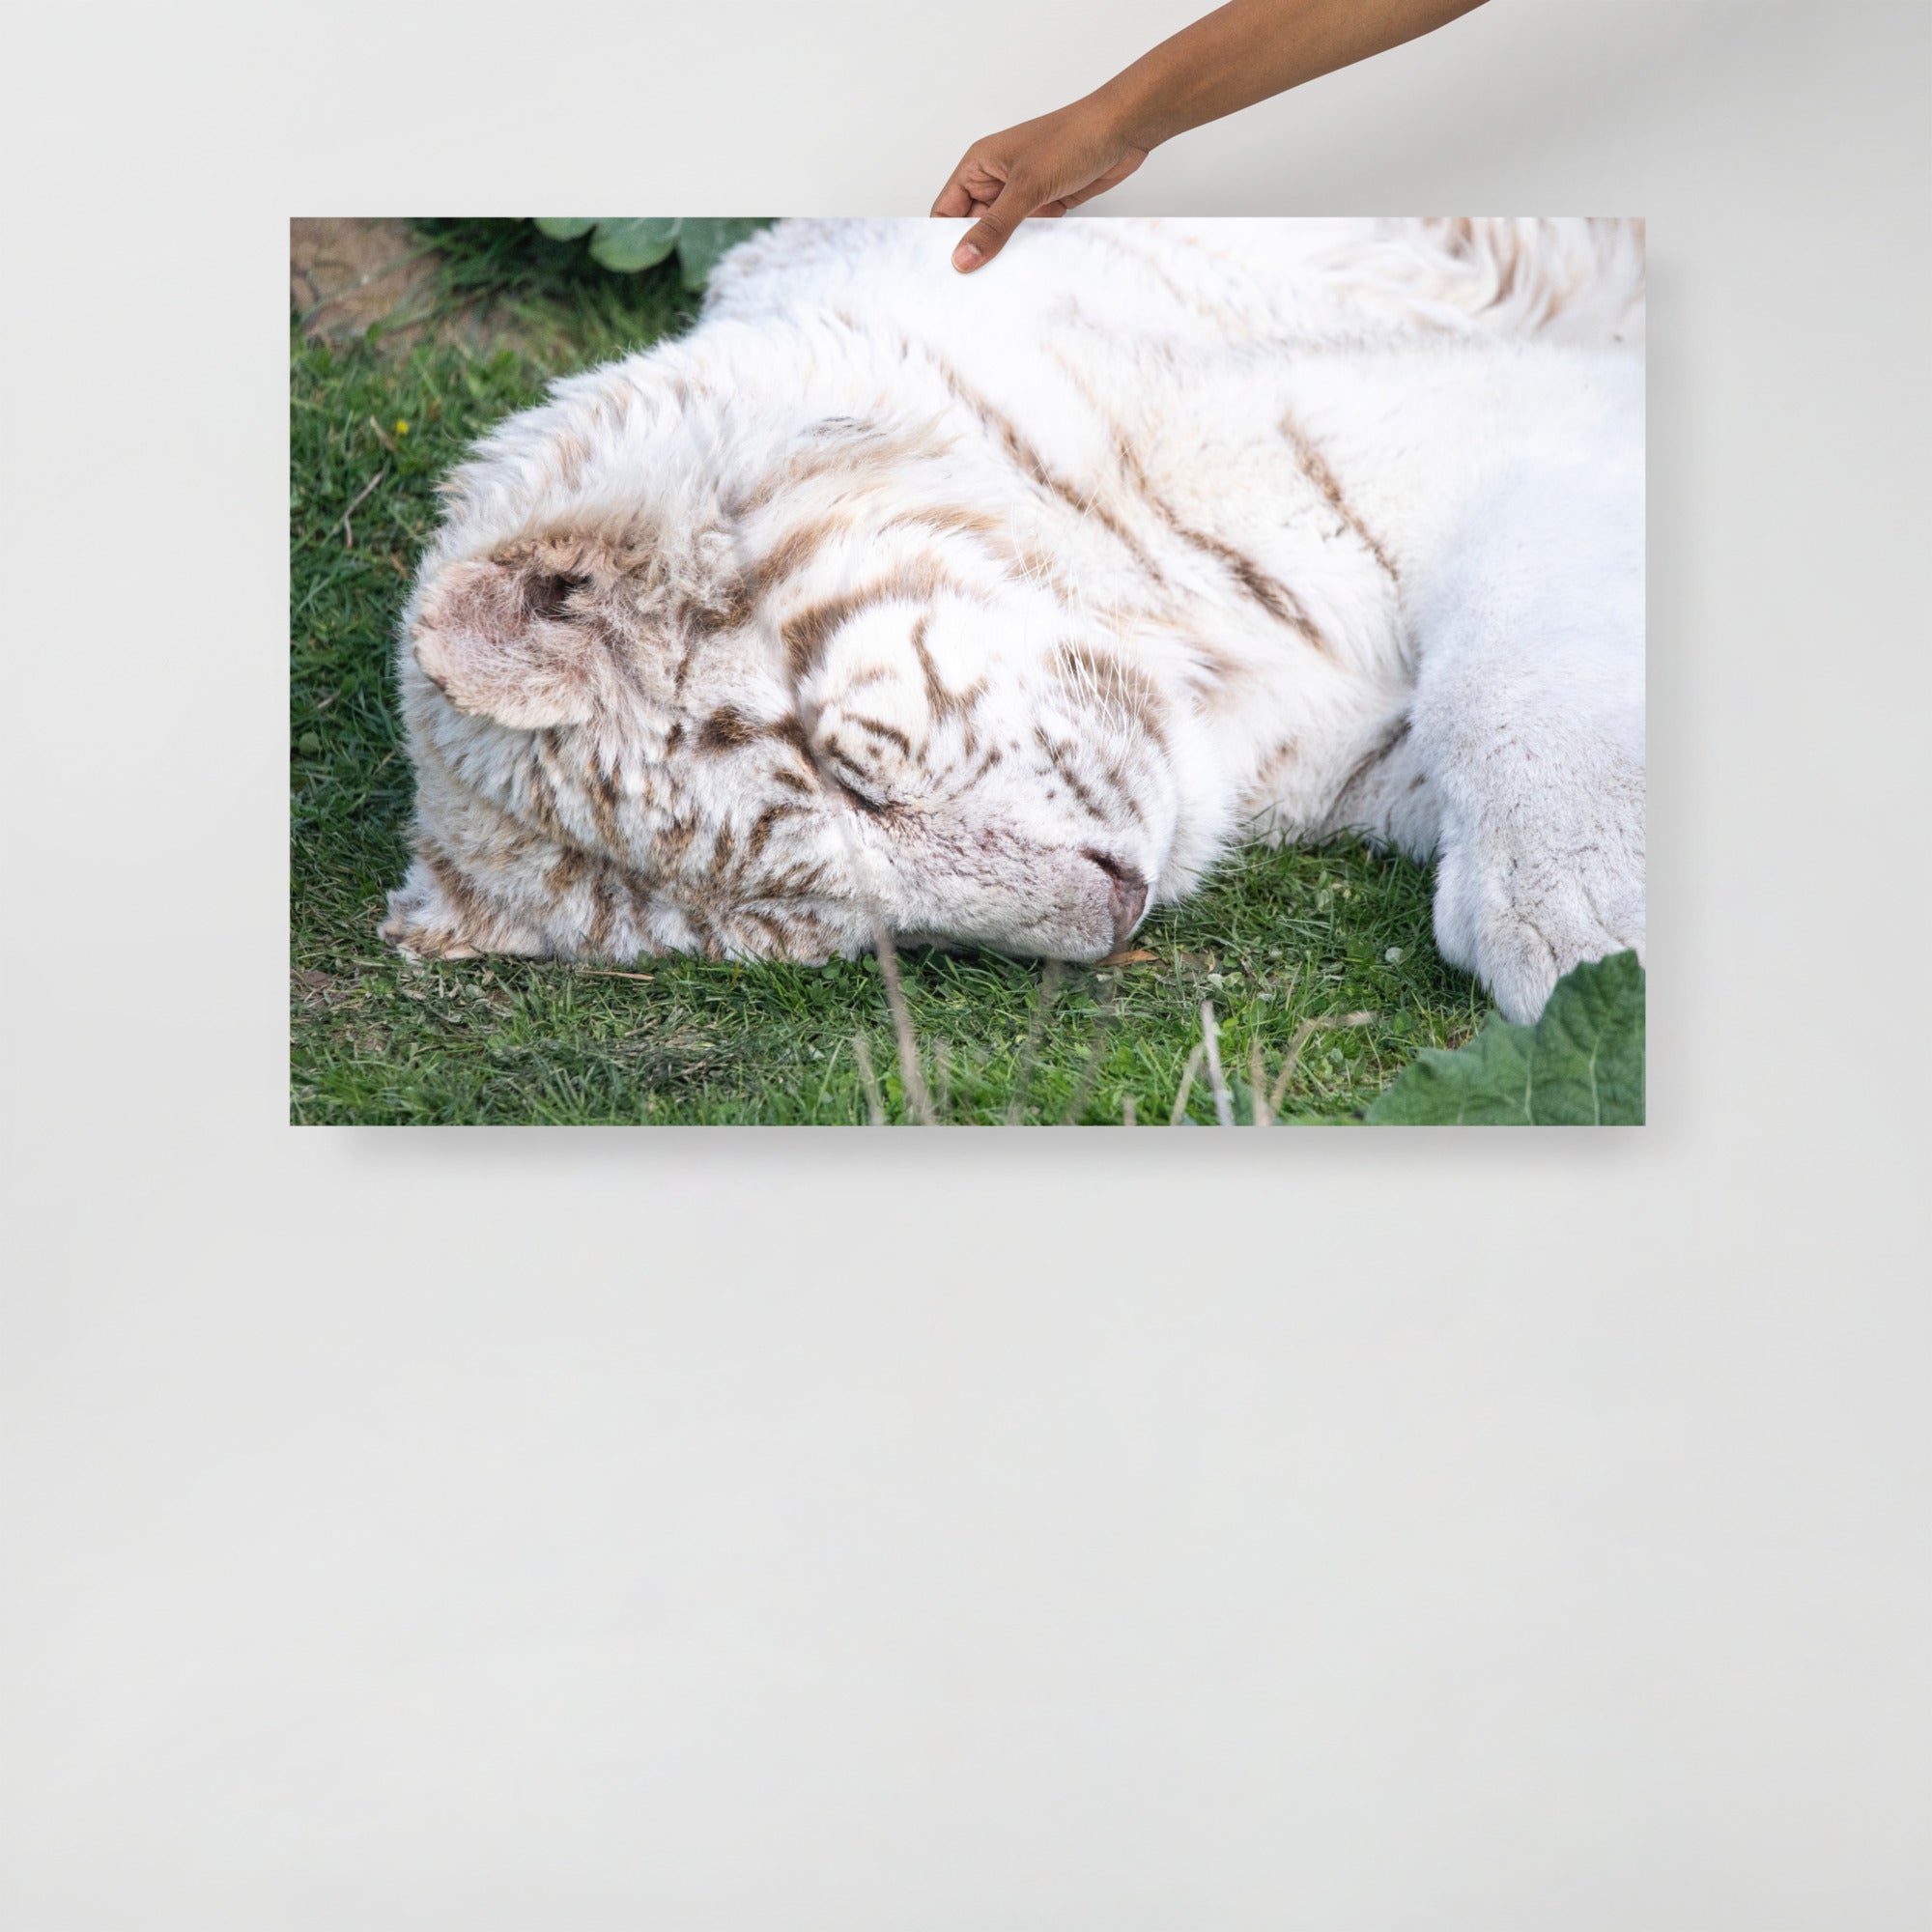 Poster mural - Tigre Blanc N02 – Photographie d'animal sauvage – Poster photo, poster XXL, photographie murale et des posters muraux unique au monde. La boutique de posters créée par Yann Peccard un Photographe français.